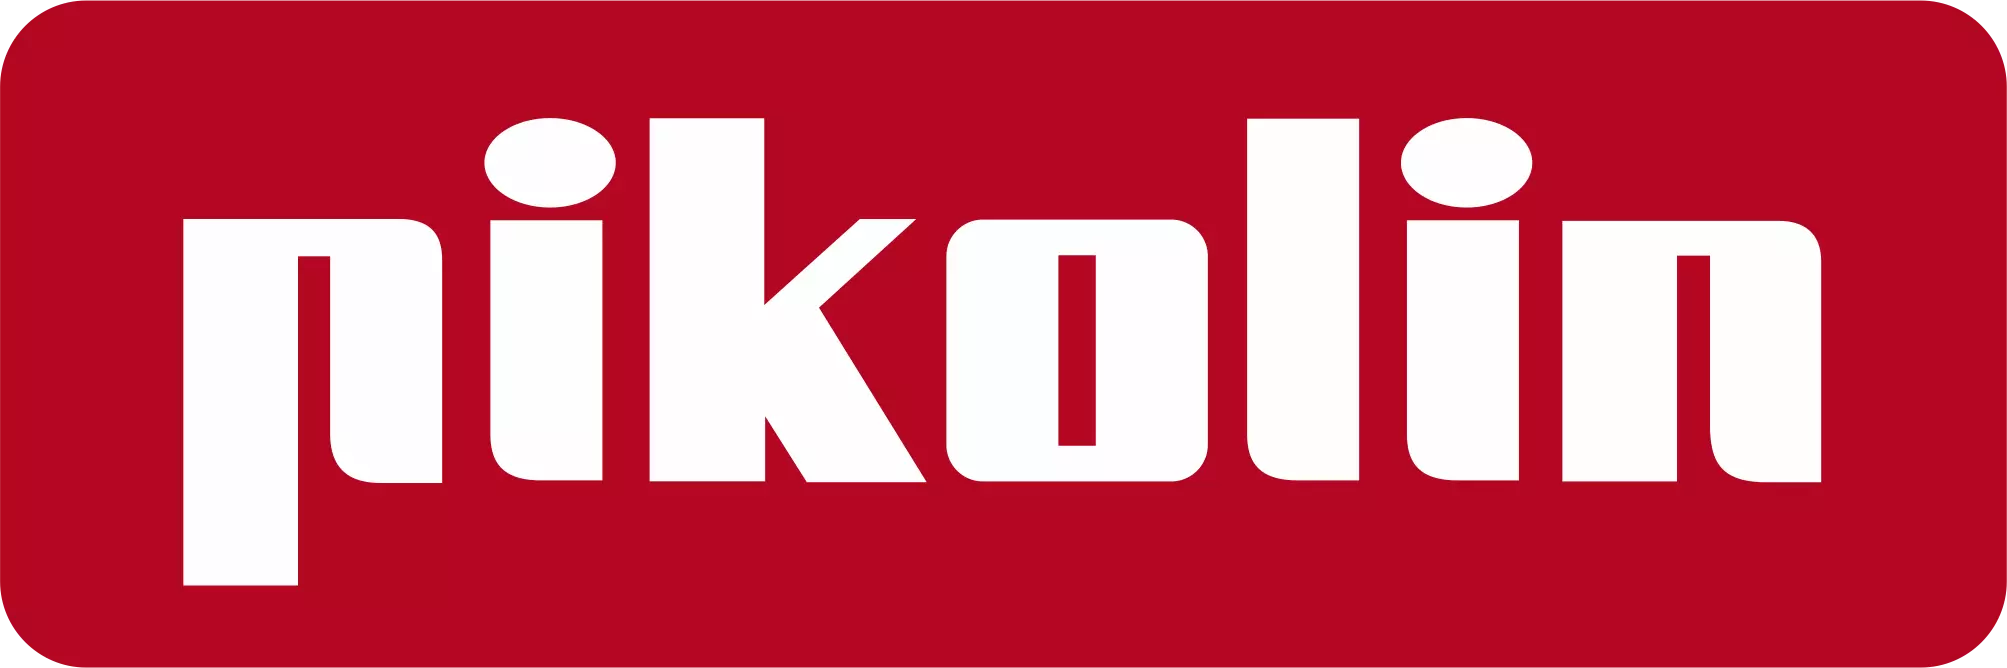 Logotipo da empresa Pikolin